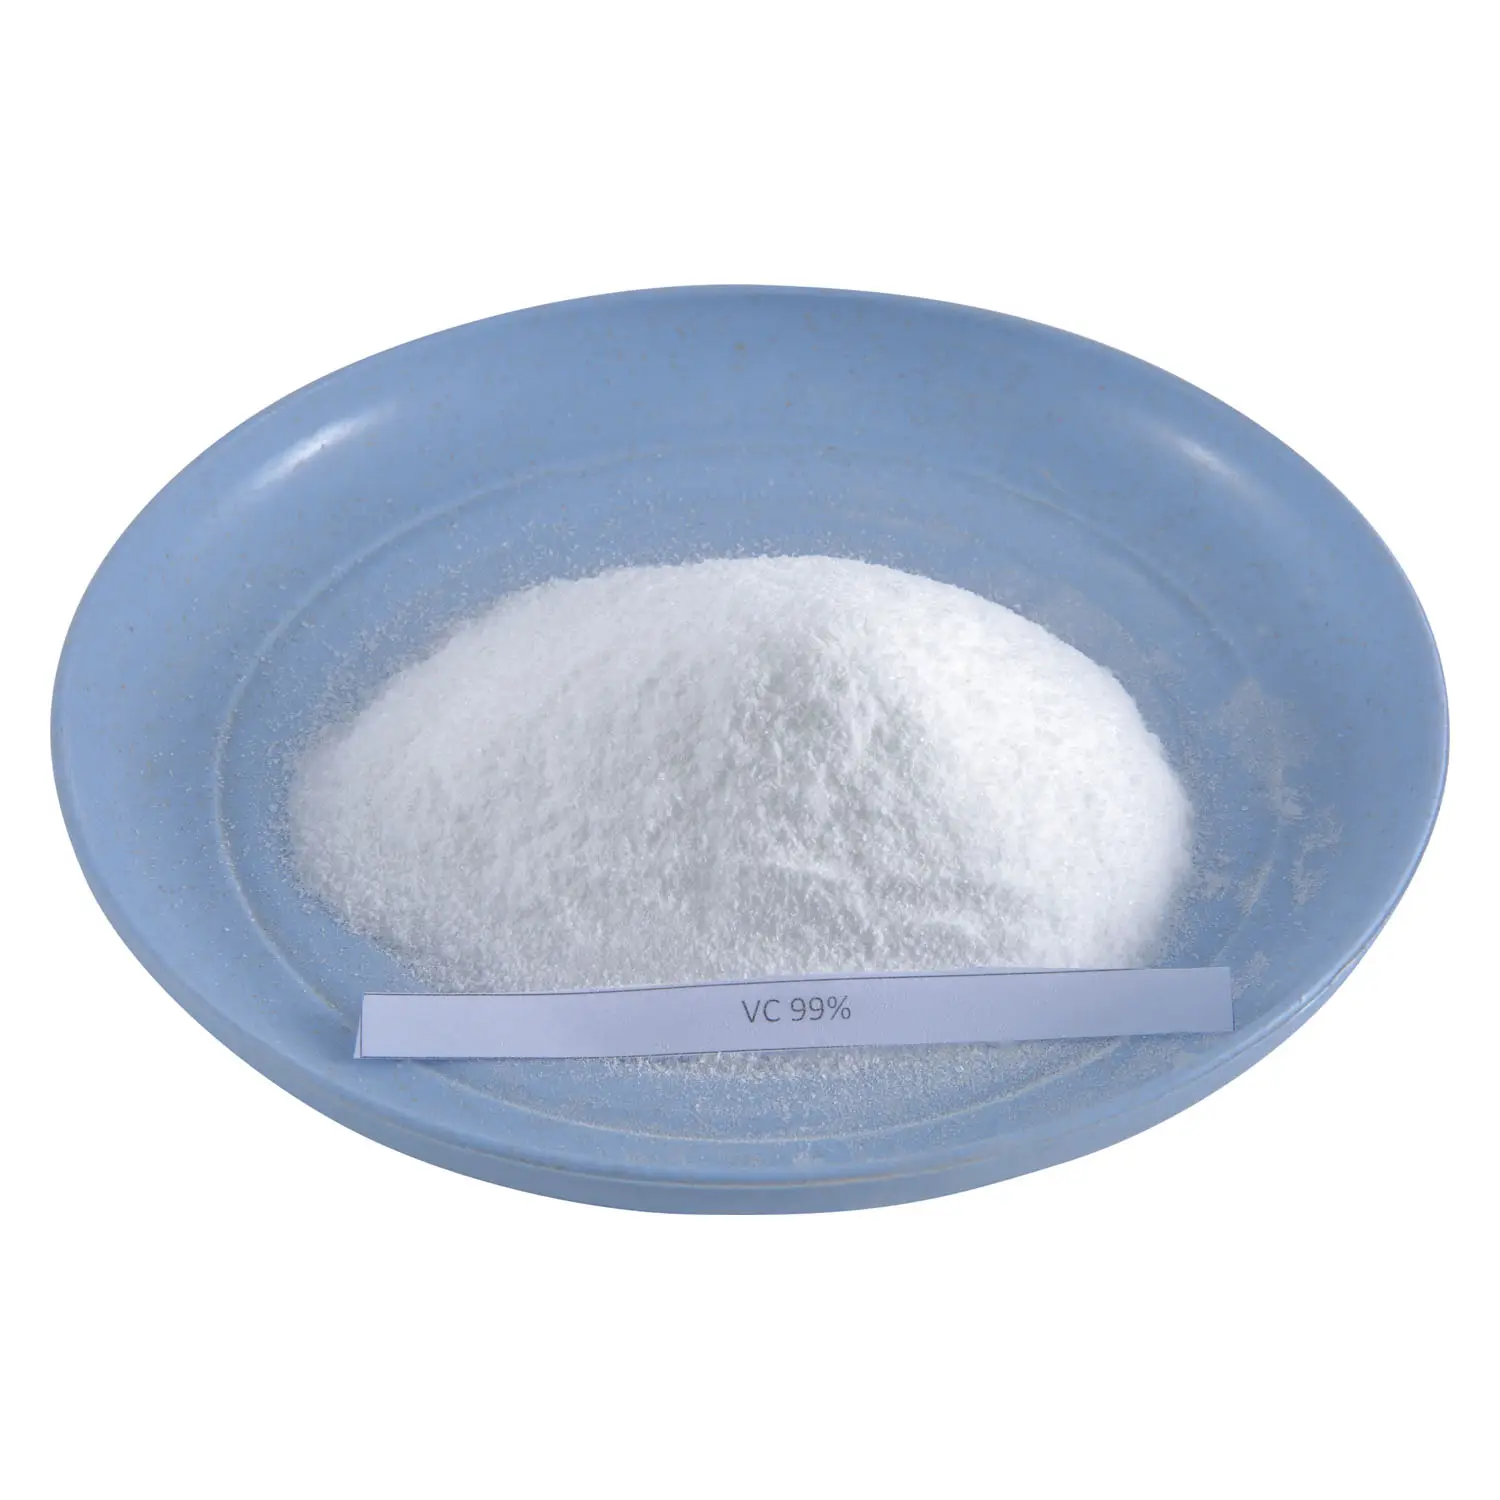 Ascorbinsäure Pulver (Vitamin C) Lebensmittel zusatzstoff